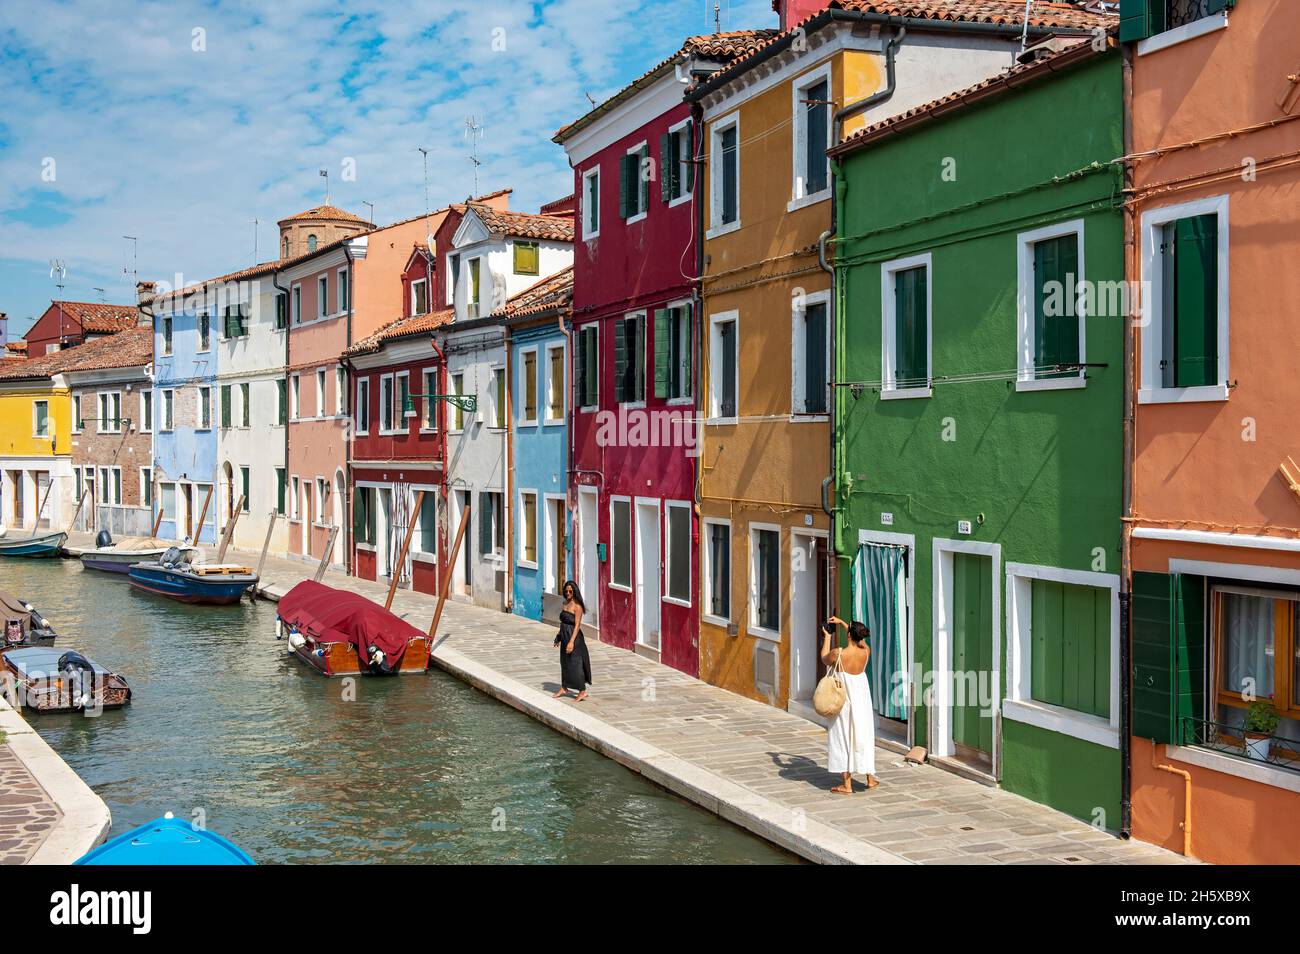 Case dipinte con colori vivaci, Fondamenta Pontinello Destra, Burano, Venezia, Italia Foto Stock